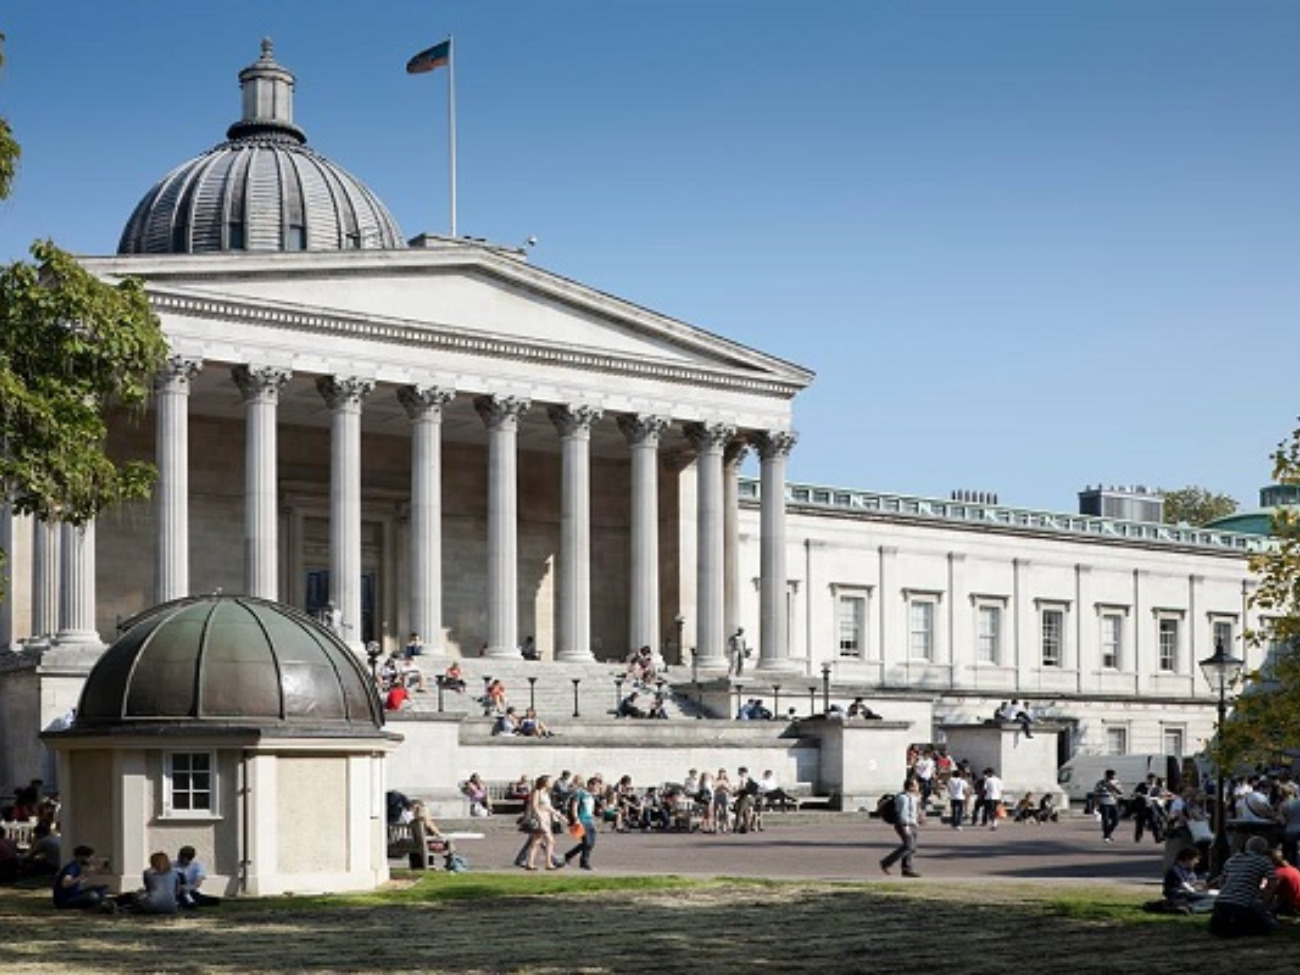 University College London xếp thứ 8 trong bảng xếp hạng các trường đại học tốt nhất thế giới (Ảnh: Shiksha Study Abroad)